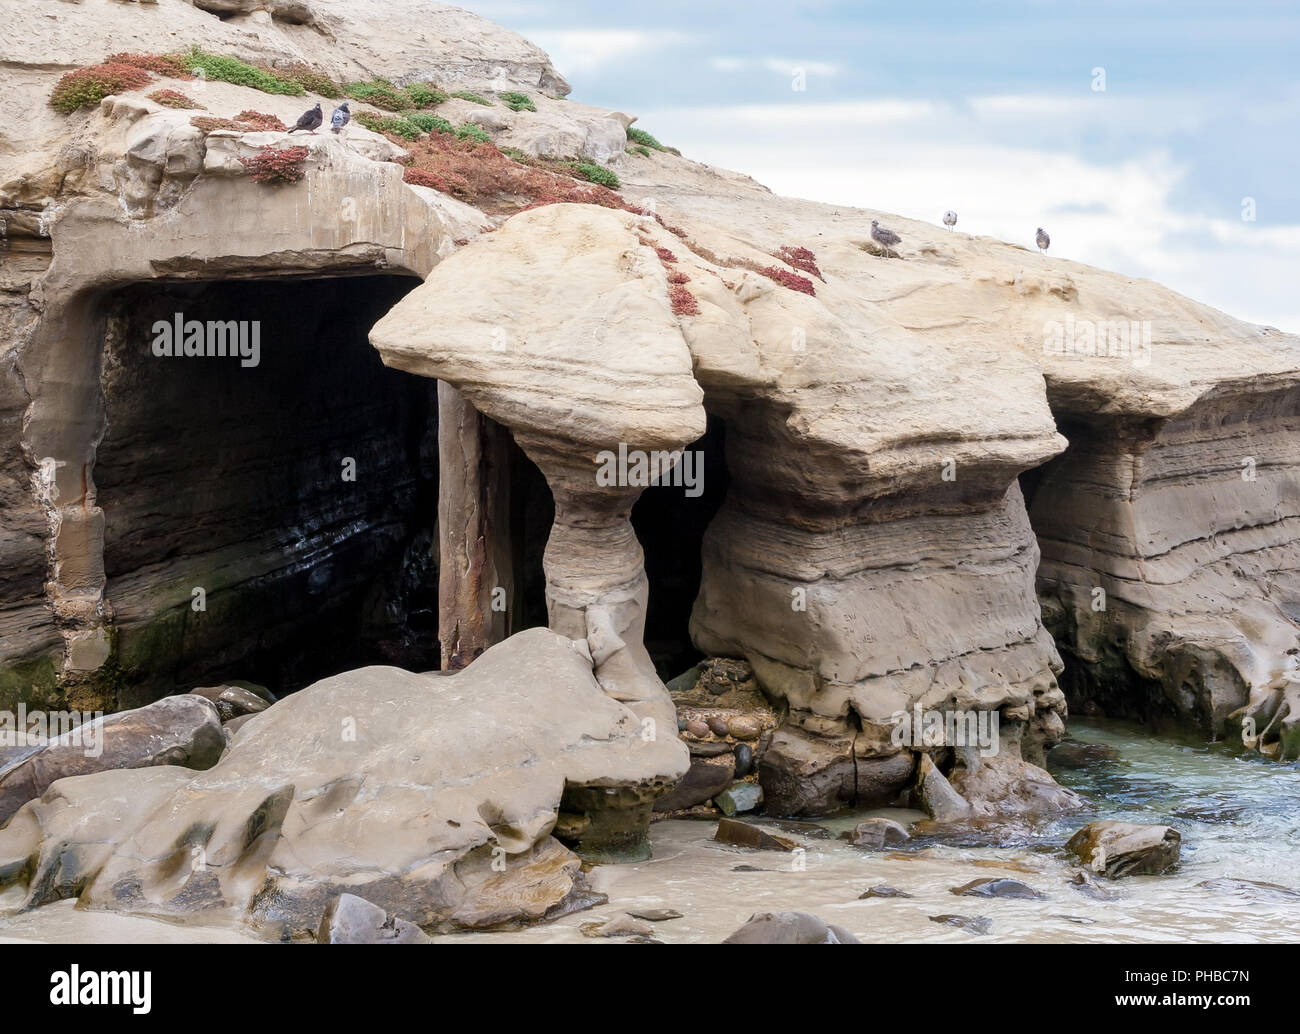 Sea cave in La Jolla, California Stock Photo